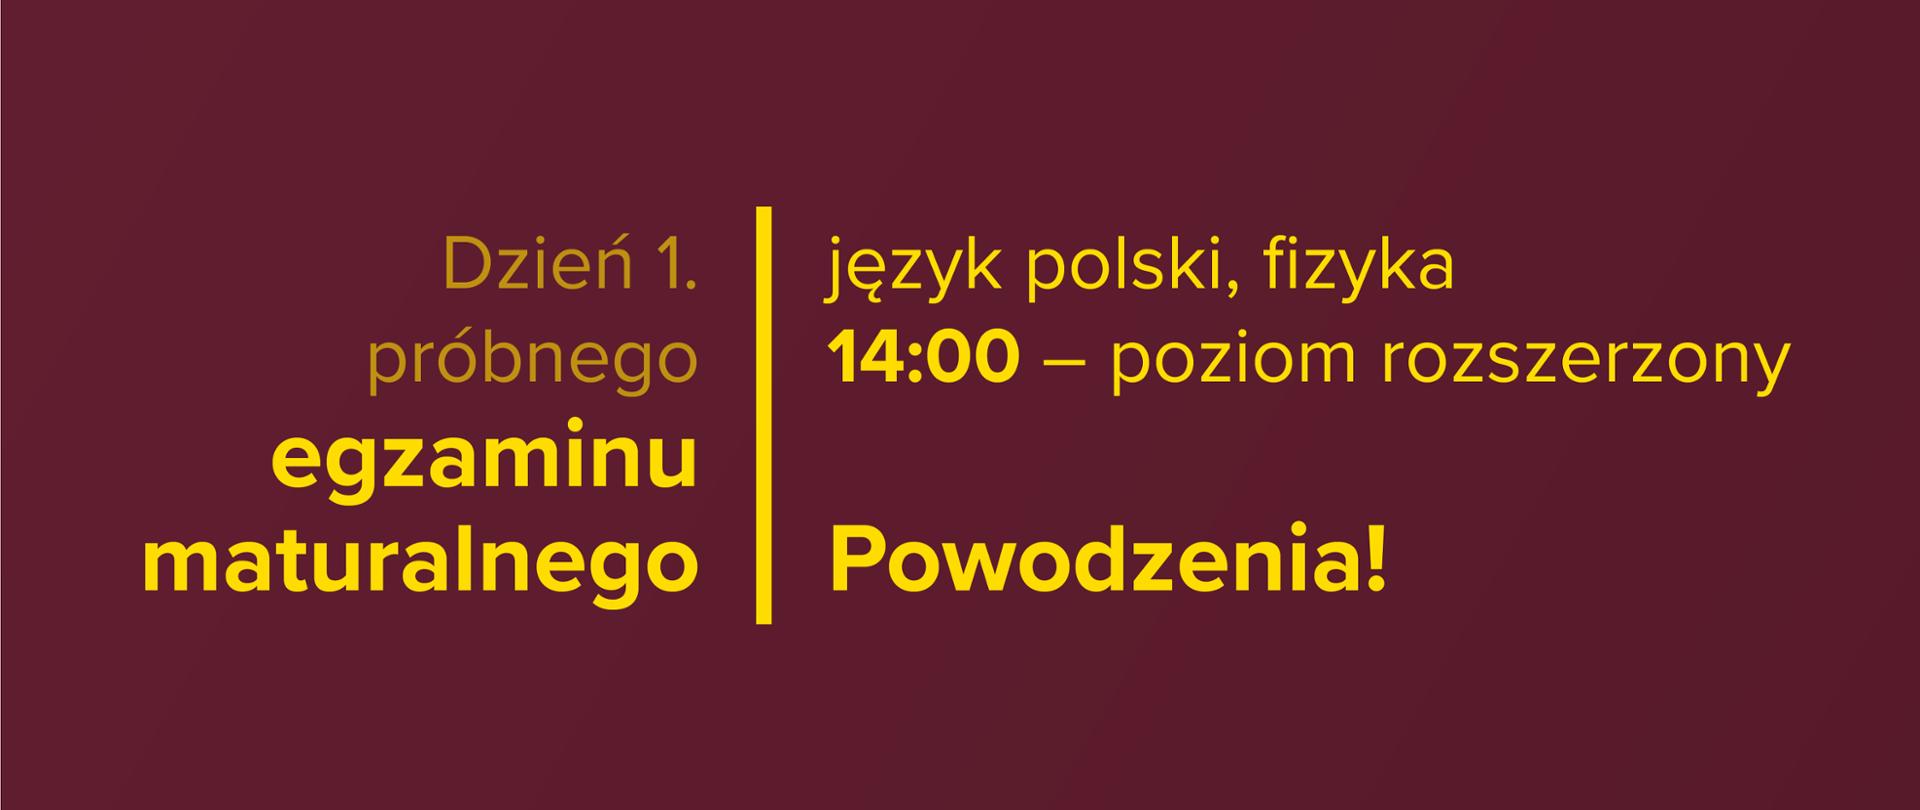 Żółty tekst na bordowym tle: Dzień 1. próbnego egzaminu maturalnego – język polski, fizyka. 9:00 – poziom rozszerzony. Powodzenia!